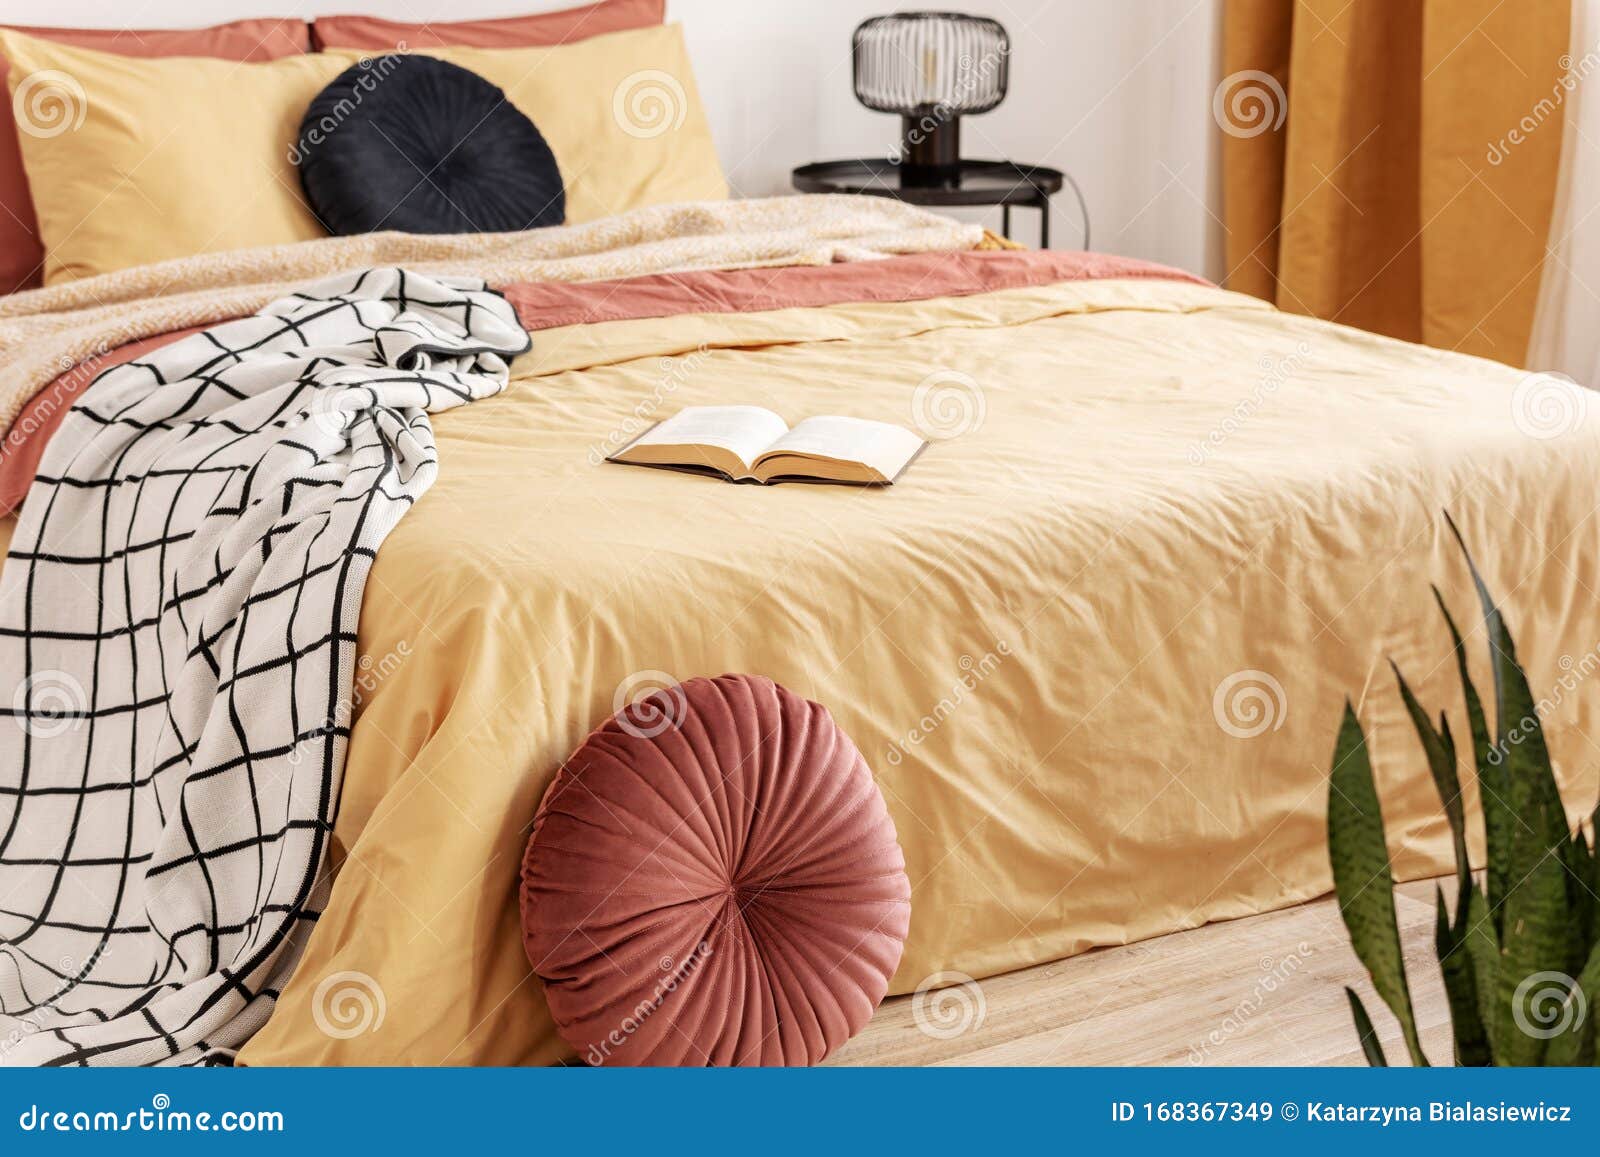 Black Velvet Pillow On Yellow Duvet In Trendy Bedroom Interior